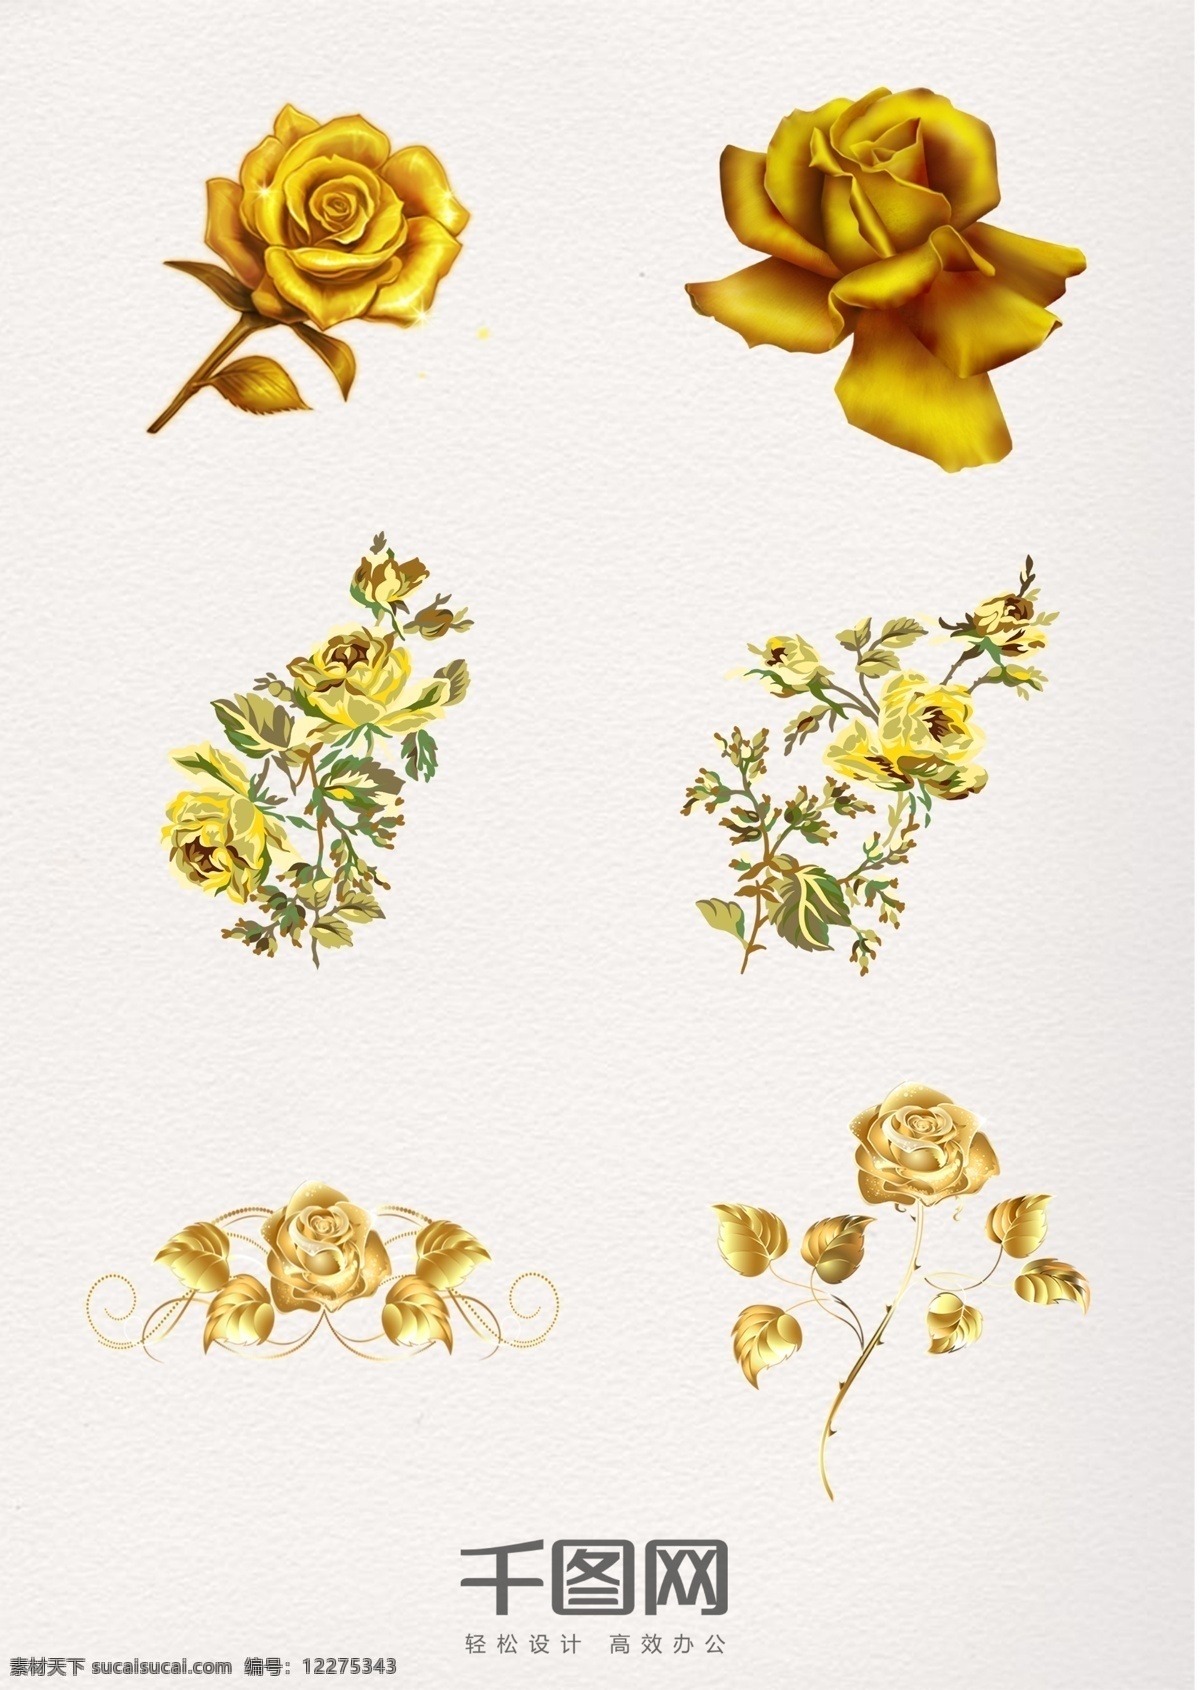 金色 典雅 玫瑰花 金箔 手绘 花苞 玫瑰花骨朵 单支玫瑰 花茎 叶子